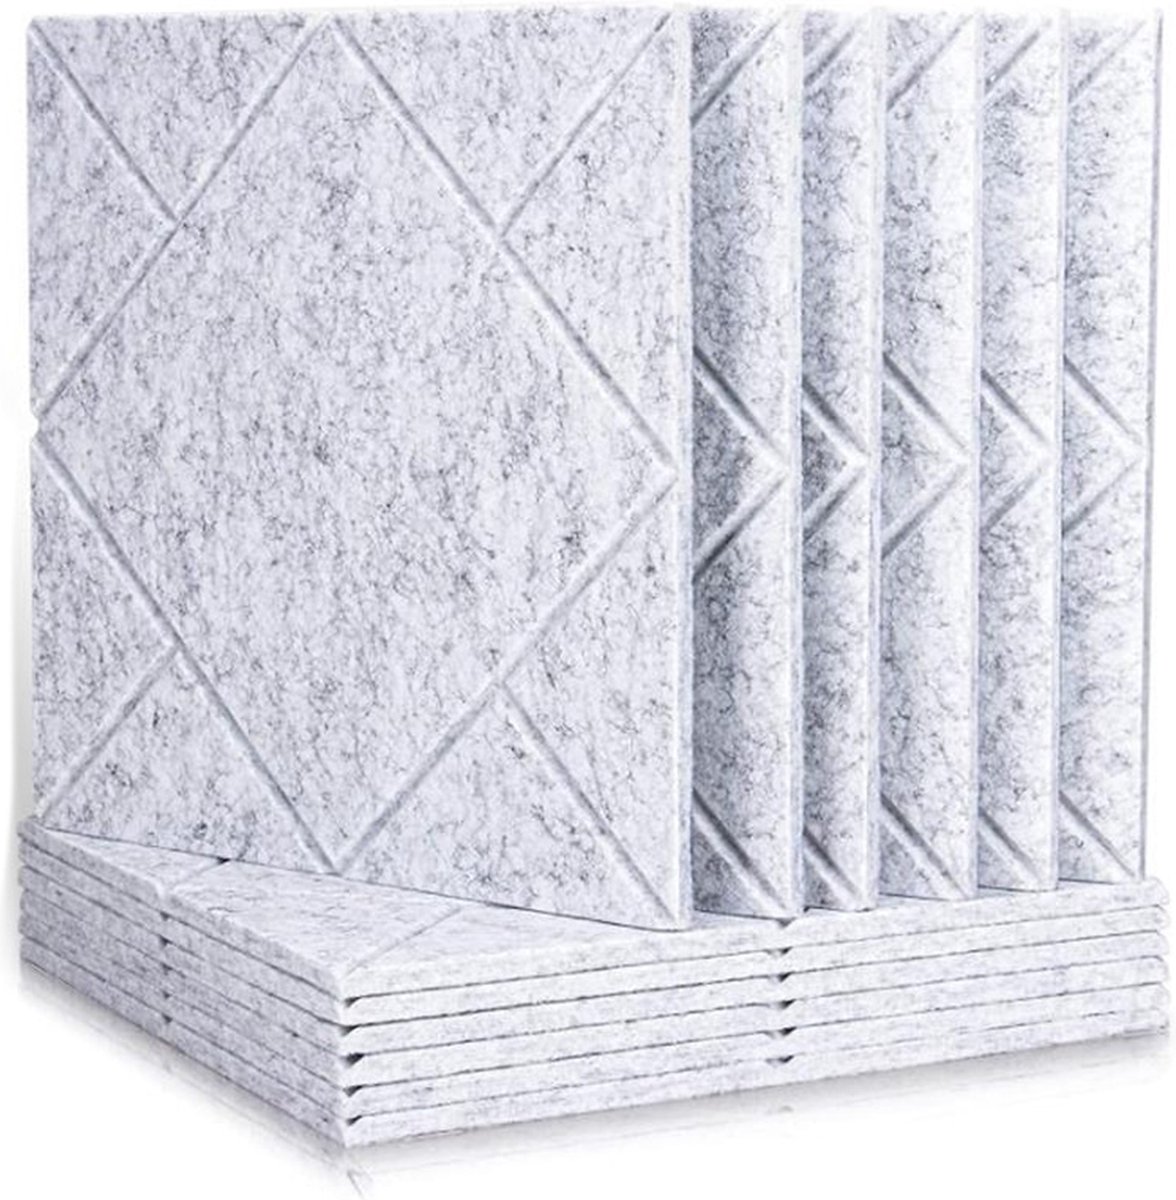 AcePunch Geluidsisolatie - 12 stuks - 30 x 30 - Hoge dichtheid Akoestische Panelen - Polyester Katoenen Isolatie panelen inclusief bevestigingsmateriaal